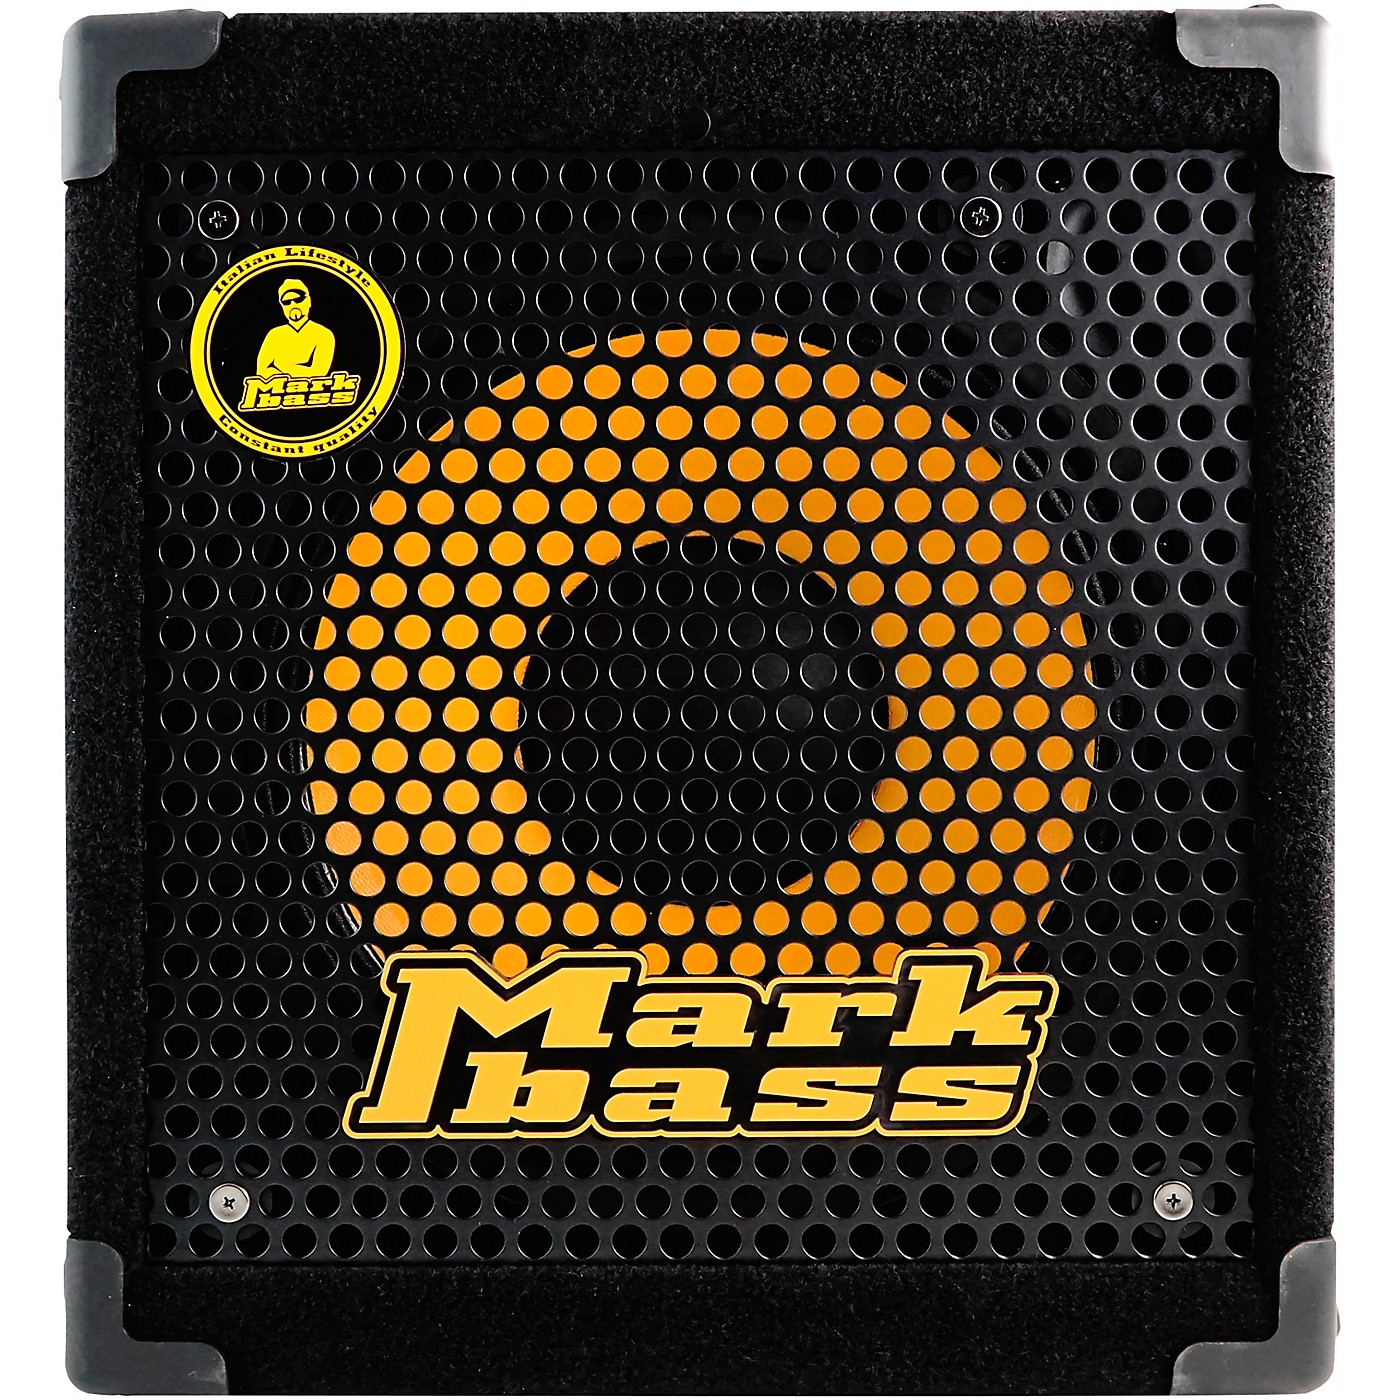 Markbass Mini CMD 121P IV 1x12 300W Bass Combo Amplifier thumbnail